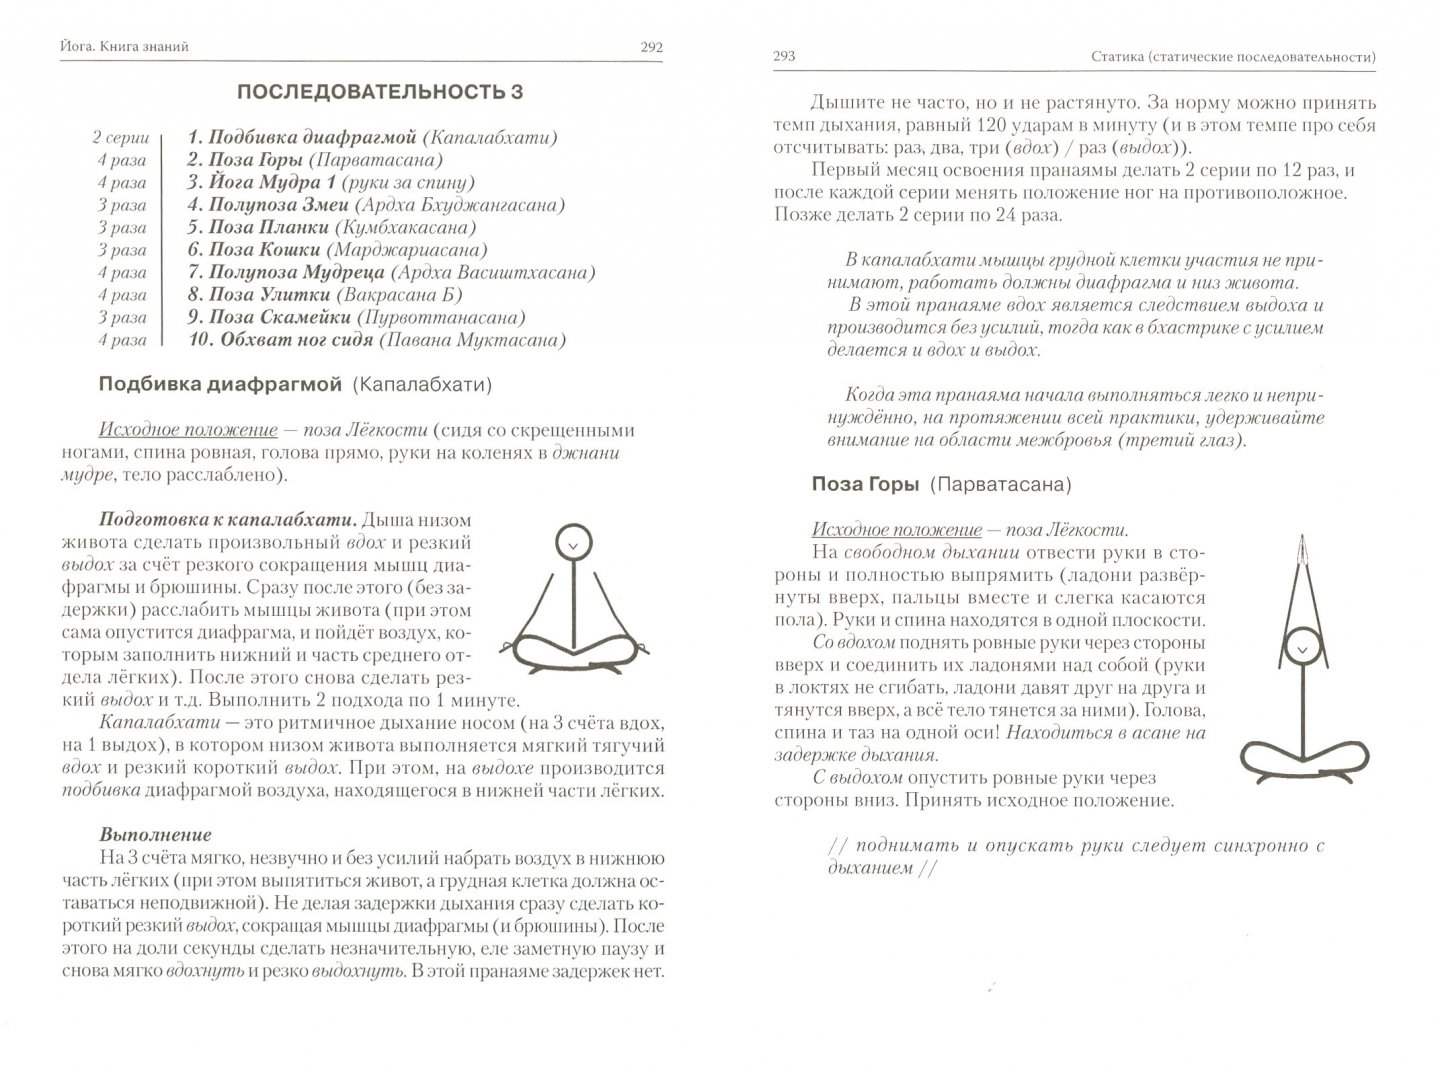 Иллюстрация 1 из 19 для Йога. Книга знаний - Валикри | Лабиринт - книги. Источник: Лабиринт